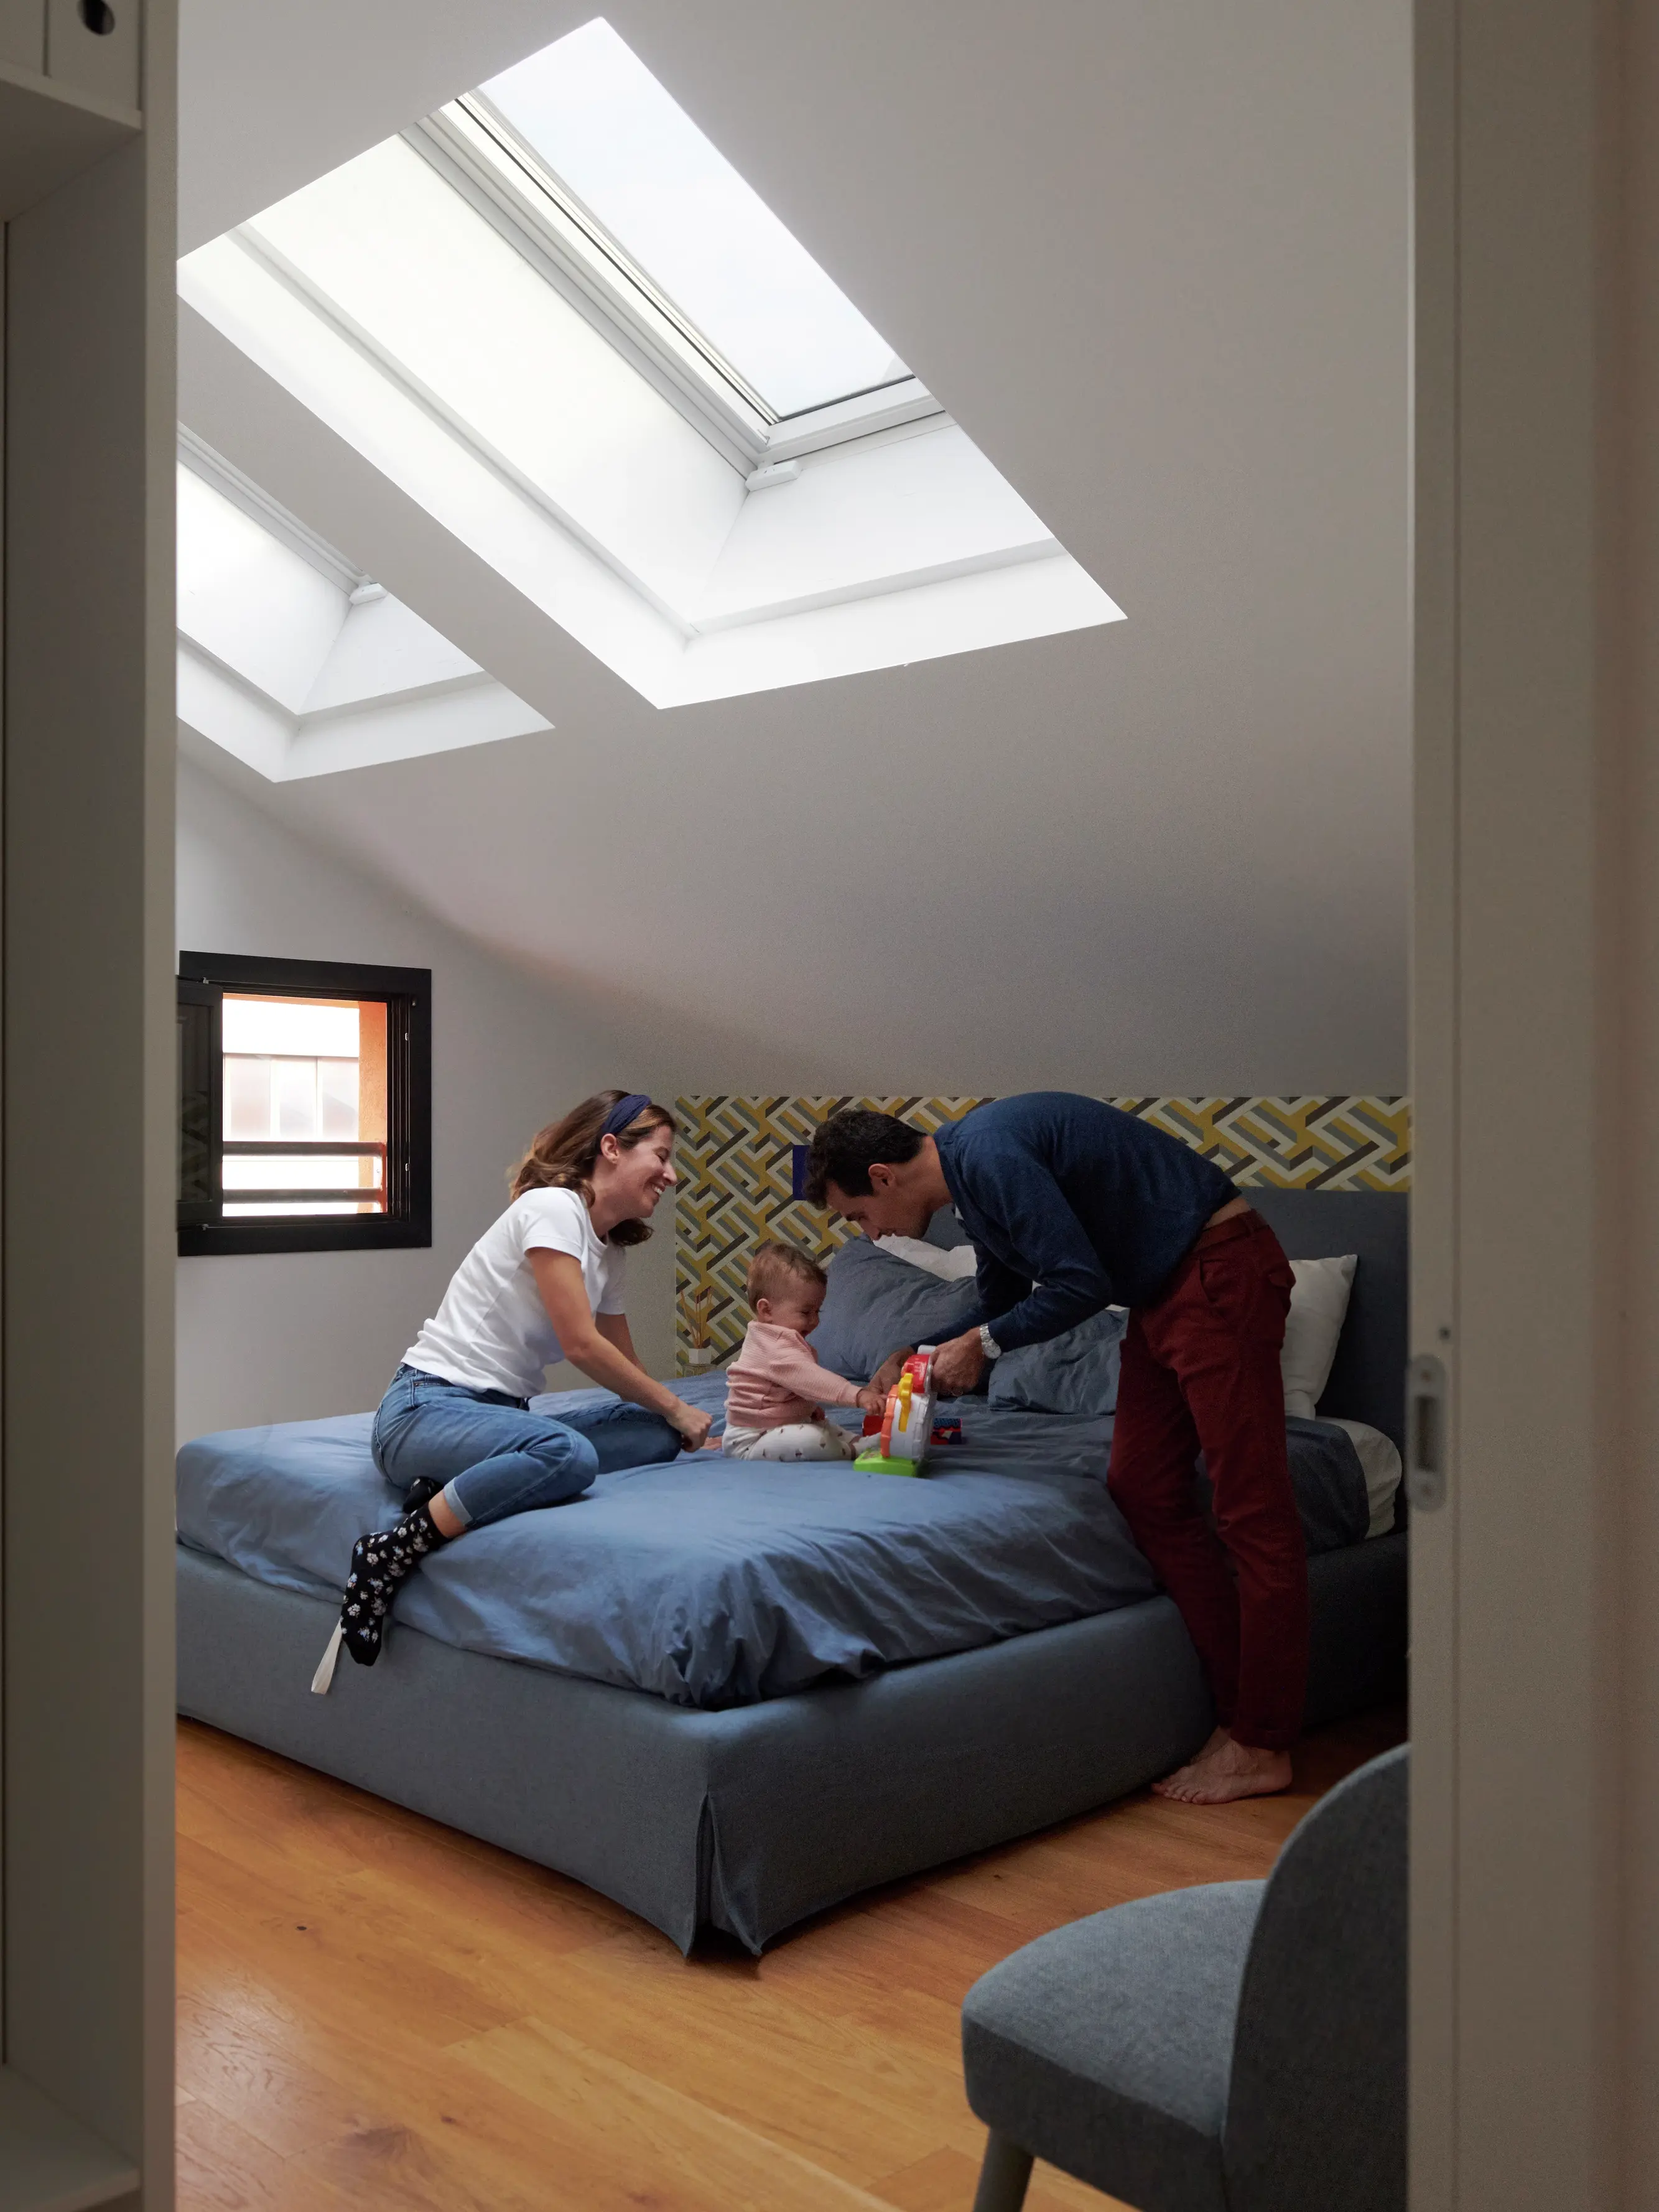 Famiglia che gioca sul letto in una stanza illuminata dal sole con finestre per tetti VELUX.